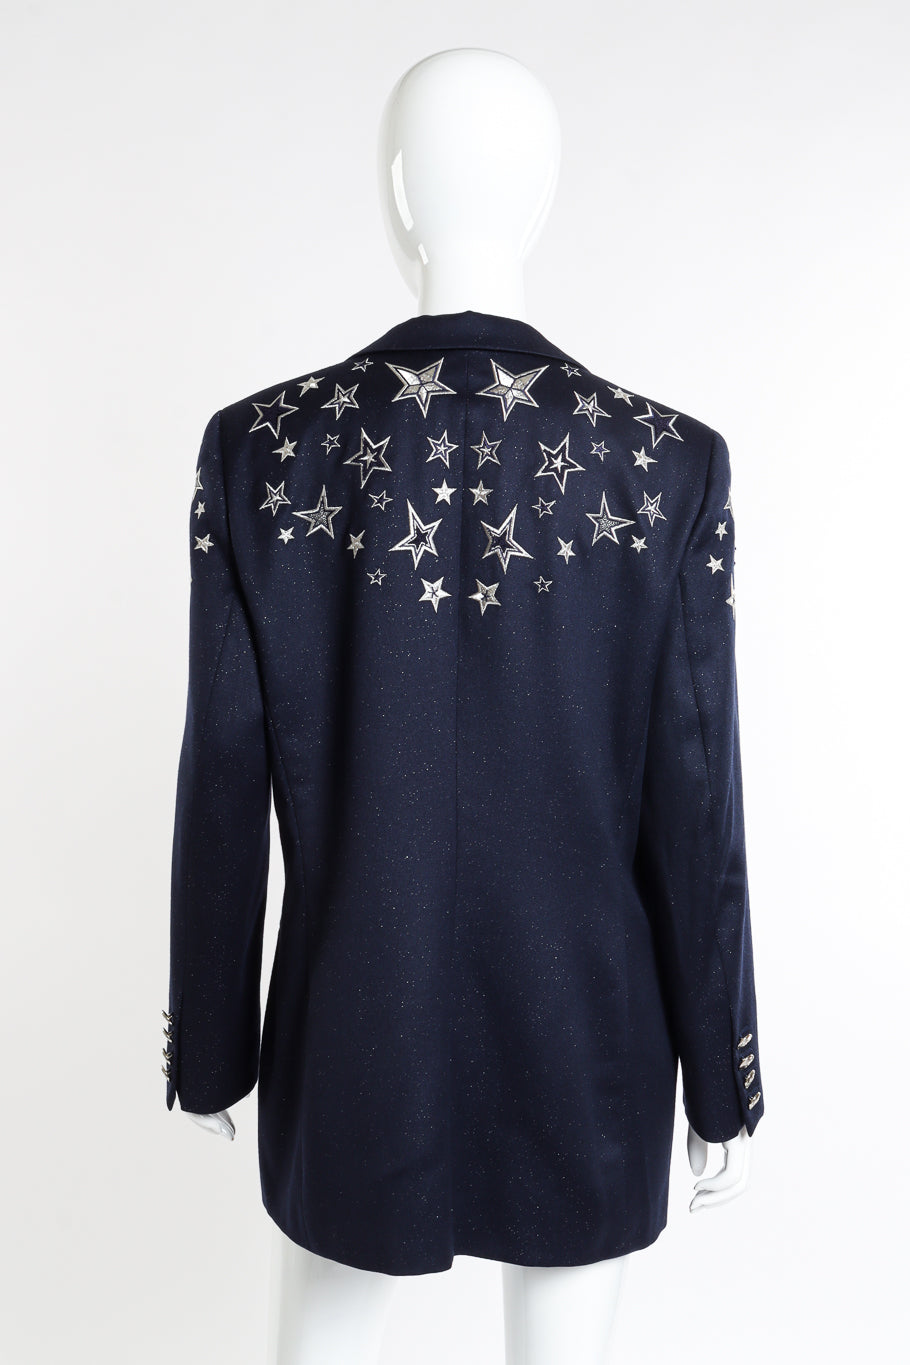 Vintage Escada Embroidered Star Glitter Wool Blazer back on mannequin @recessla